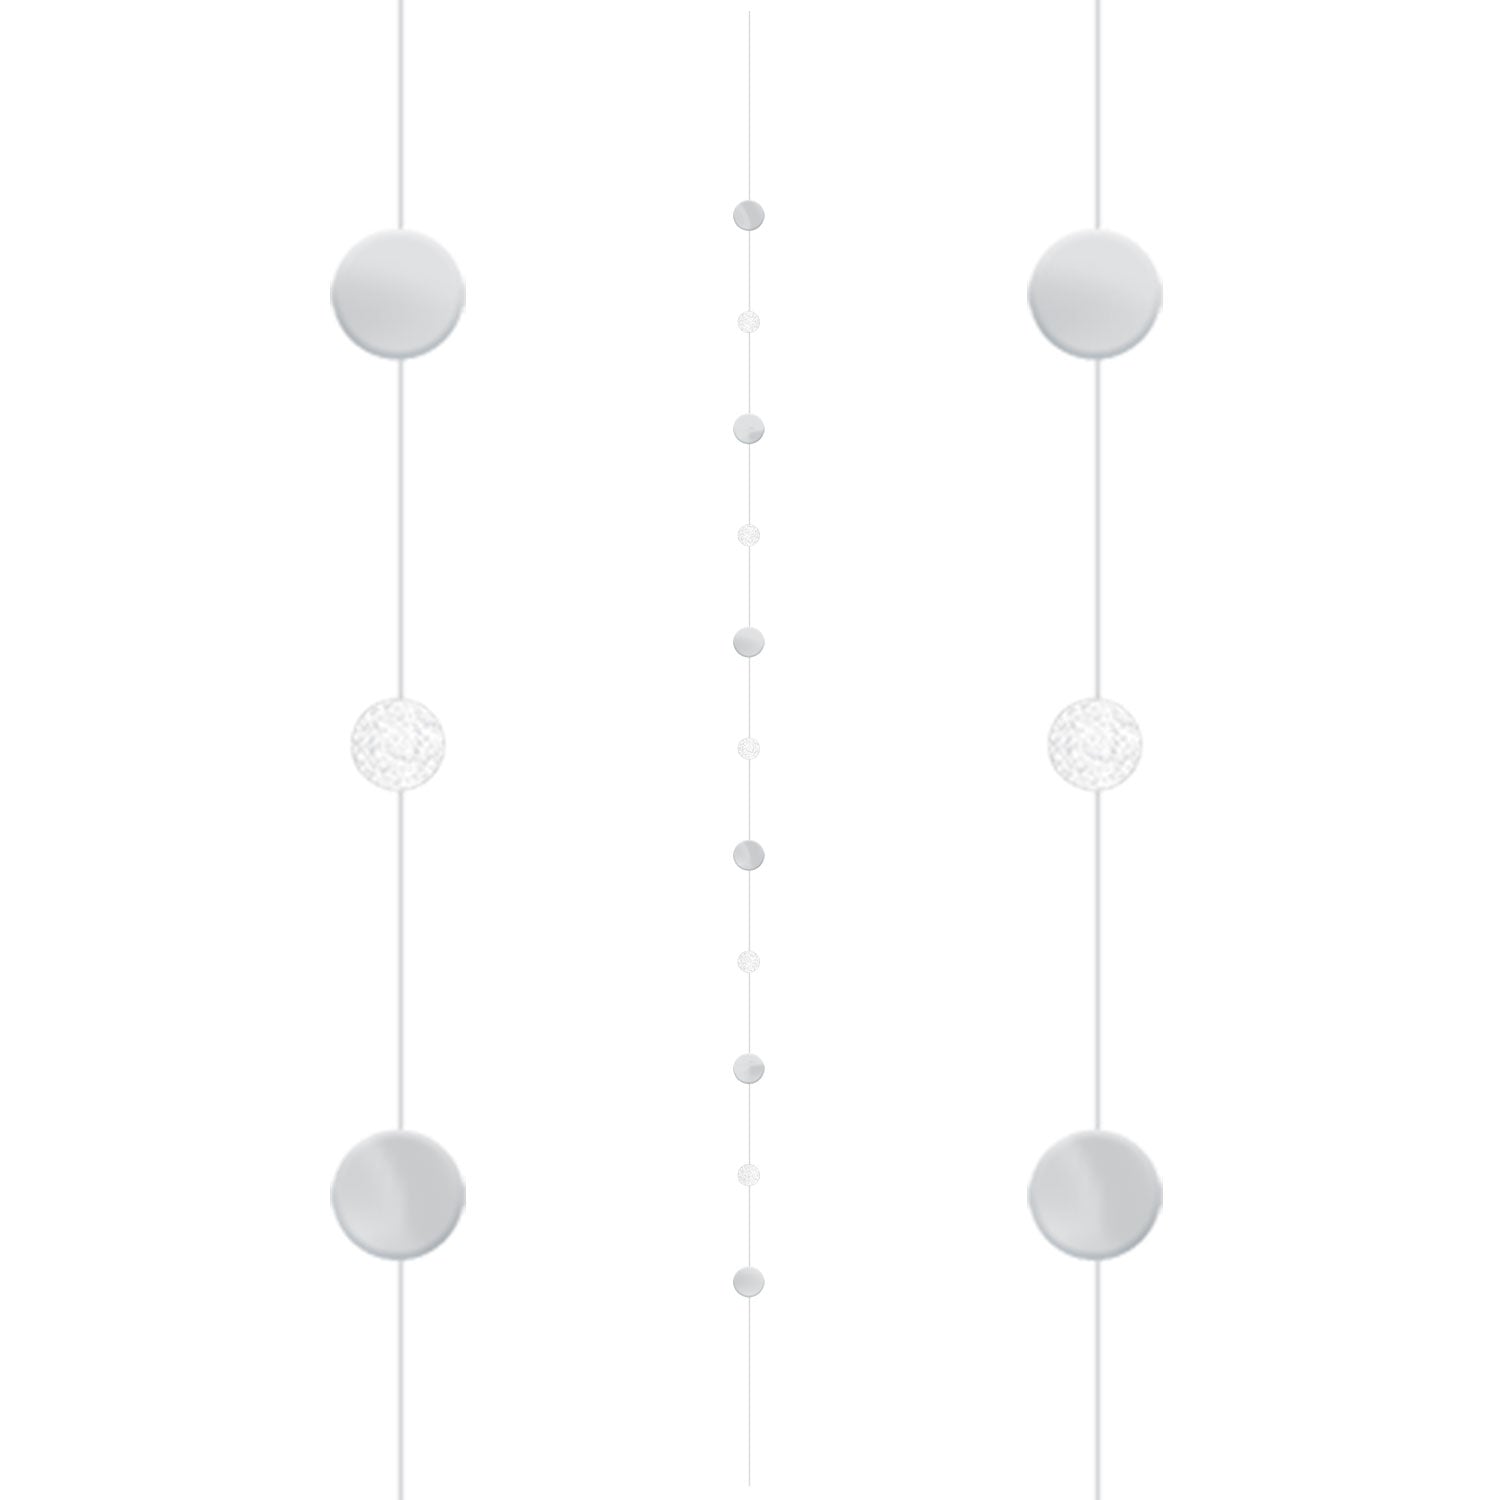 Balloon Fun Strings 1.82m - White/Silver